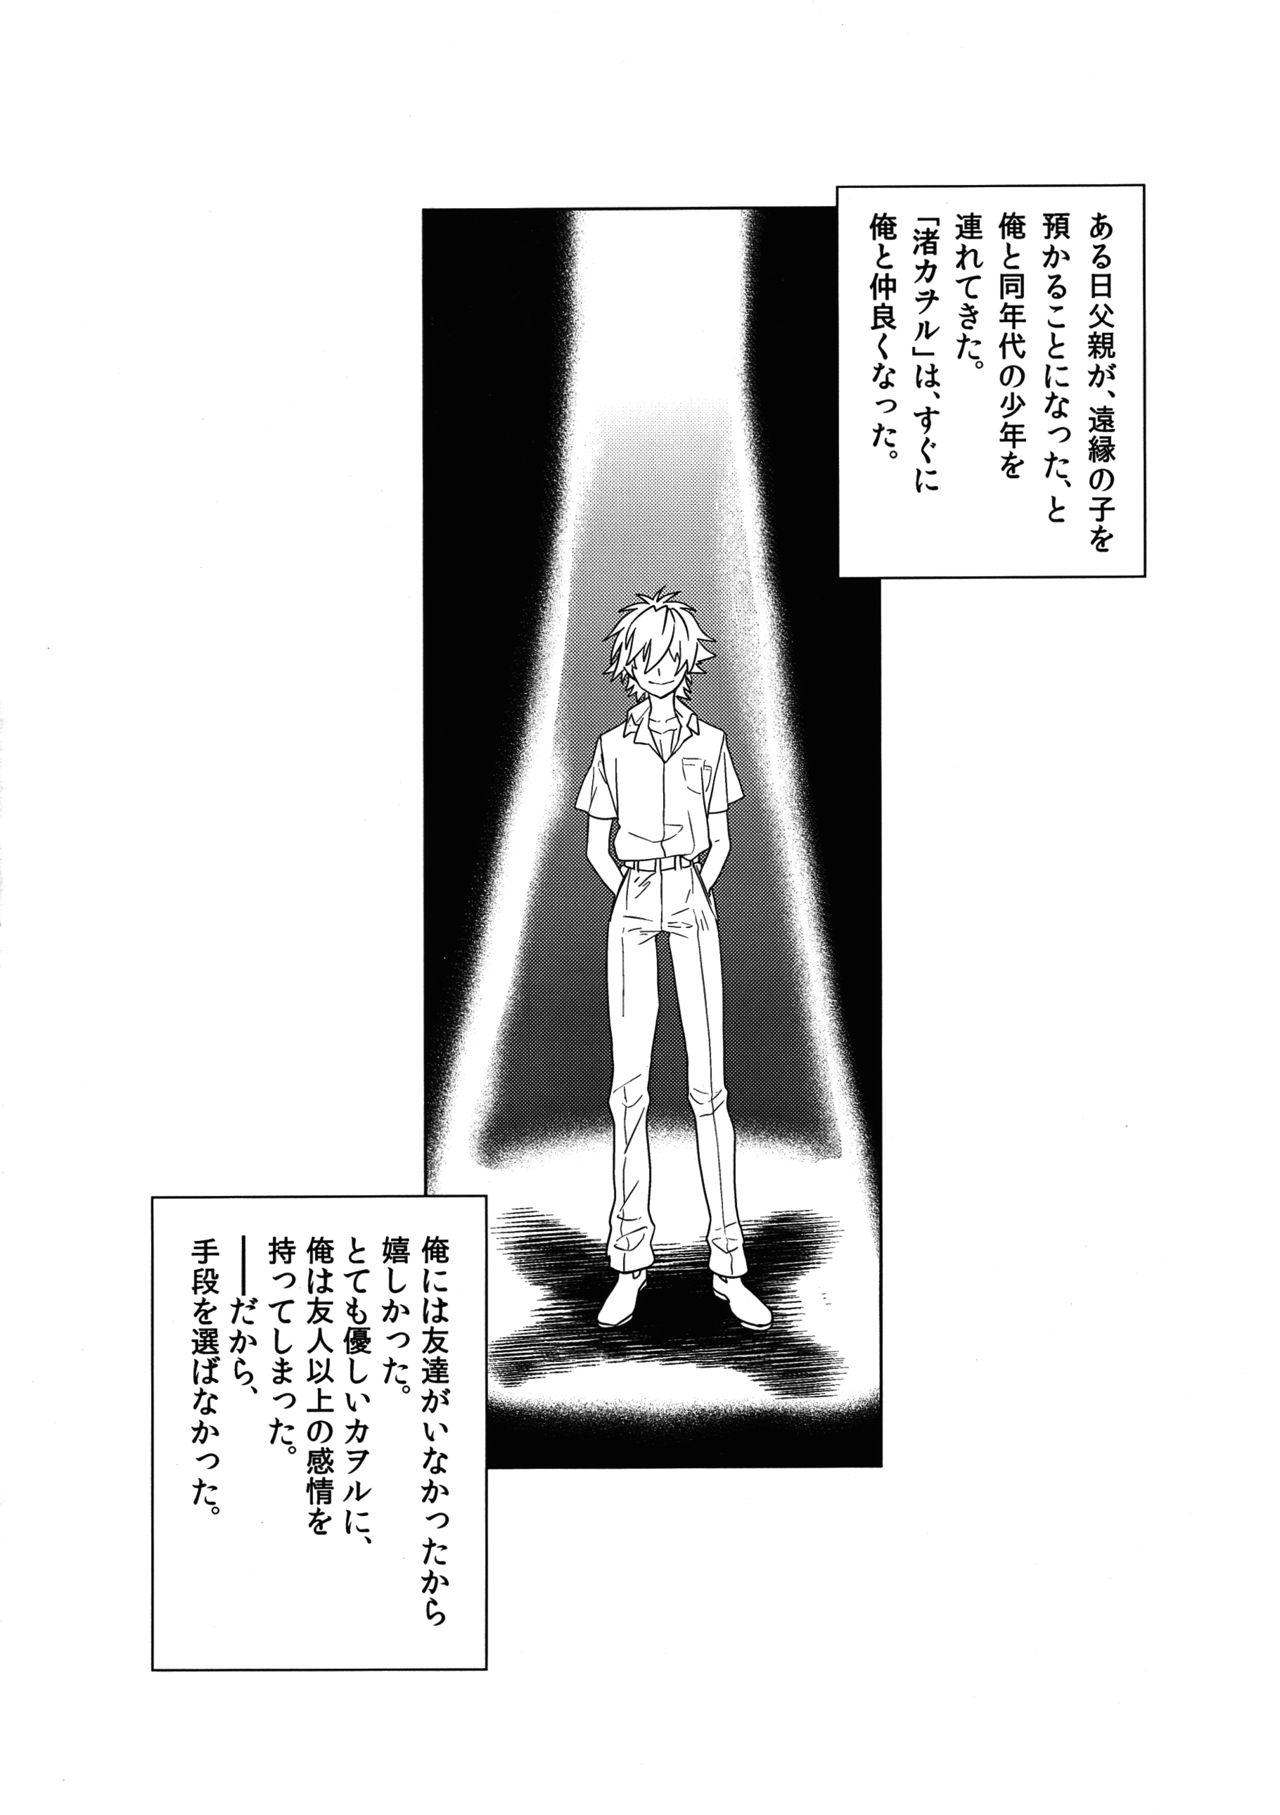 Cam Sex Ore no Koto o Ikari Shinji da to Omoikomu Saimin ni Kakatta Nagisa Kaworu-kun wa Mechamecha Yasashii - Neon genesis evangelion Officesex - Page 2